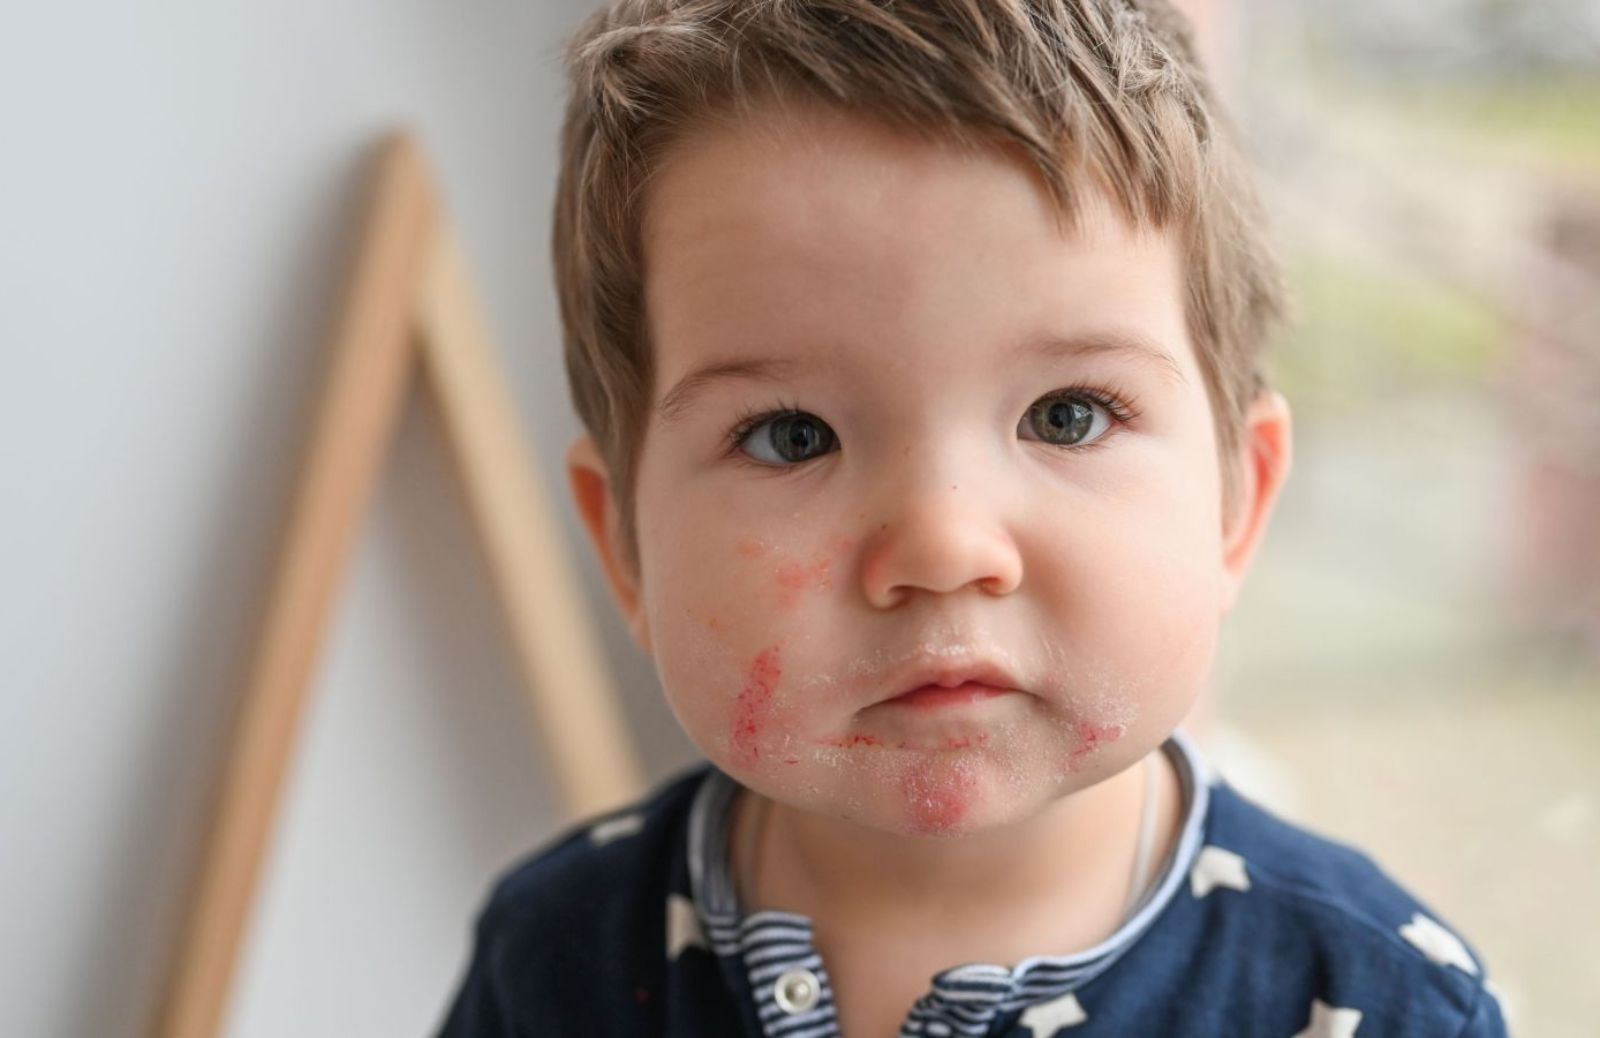 Dermatite periorale: come curare il rossore intorno alla bocca dei bambini